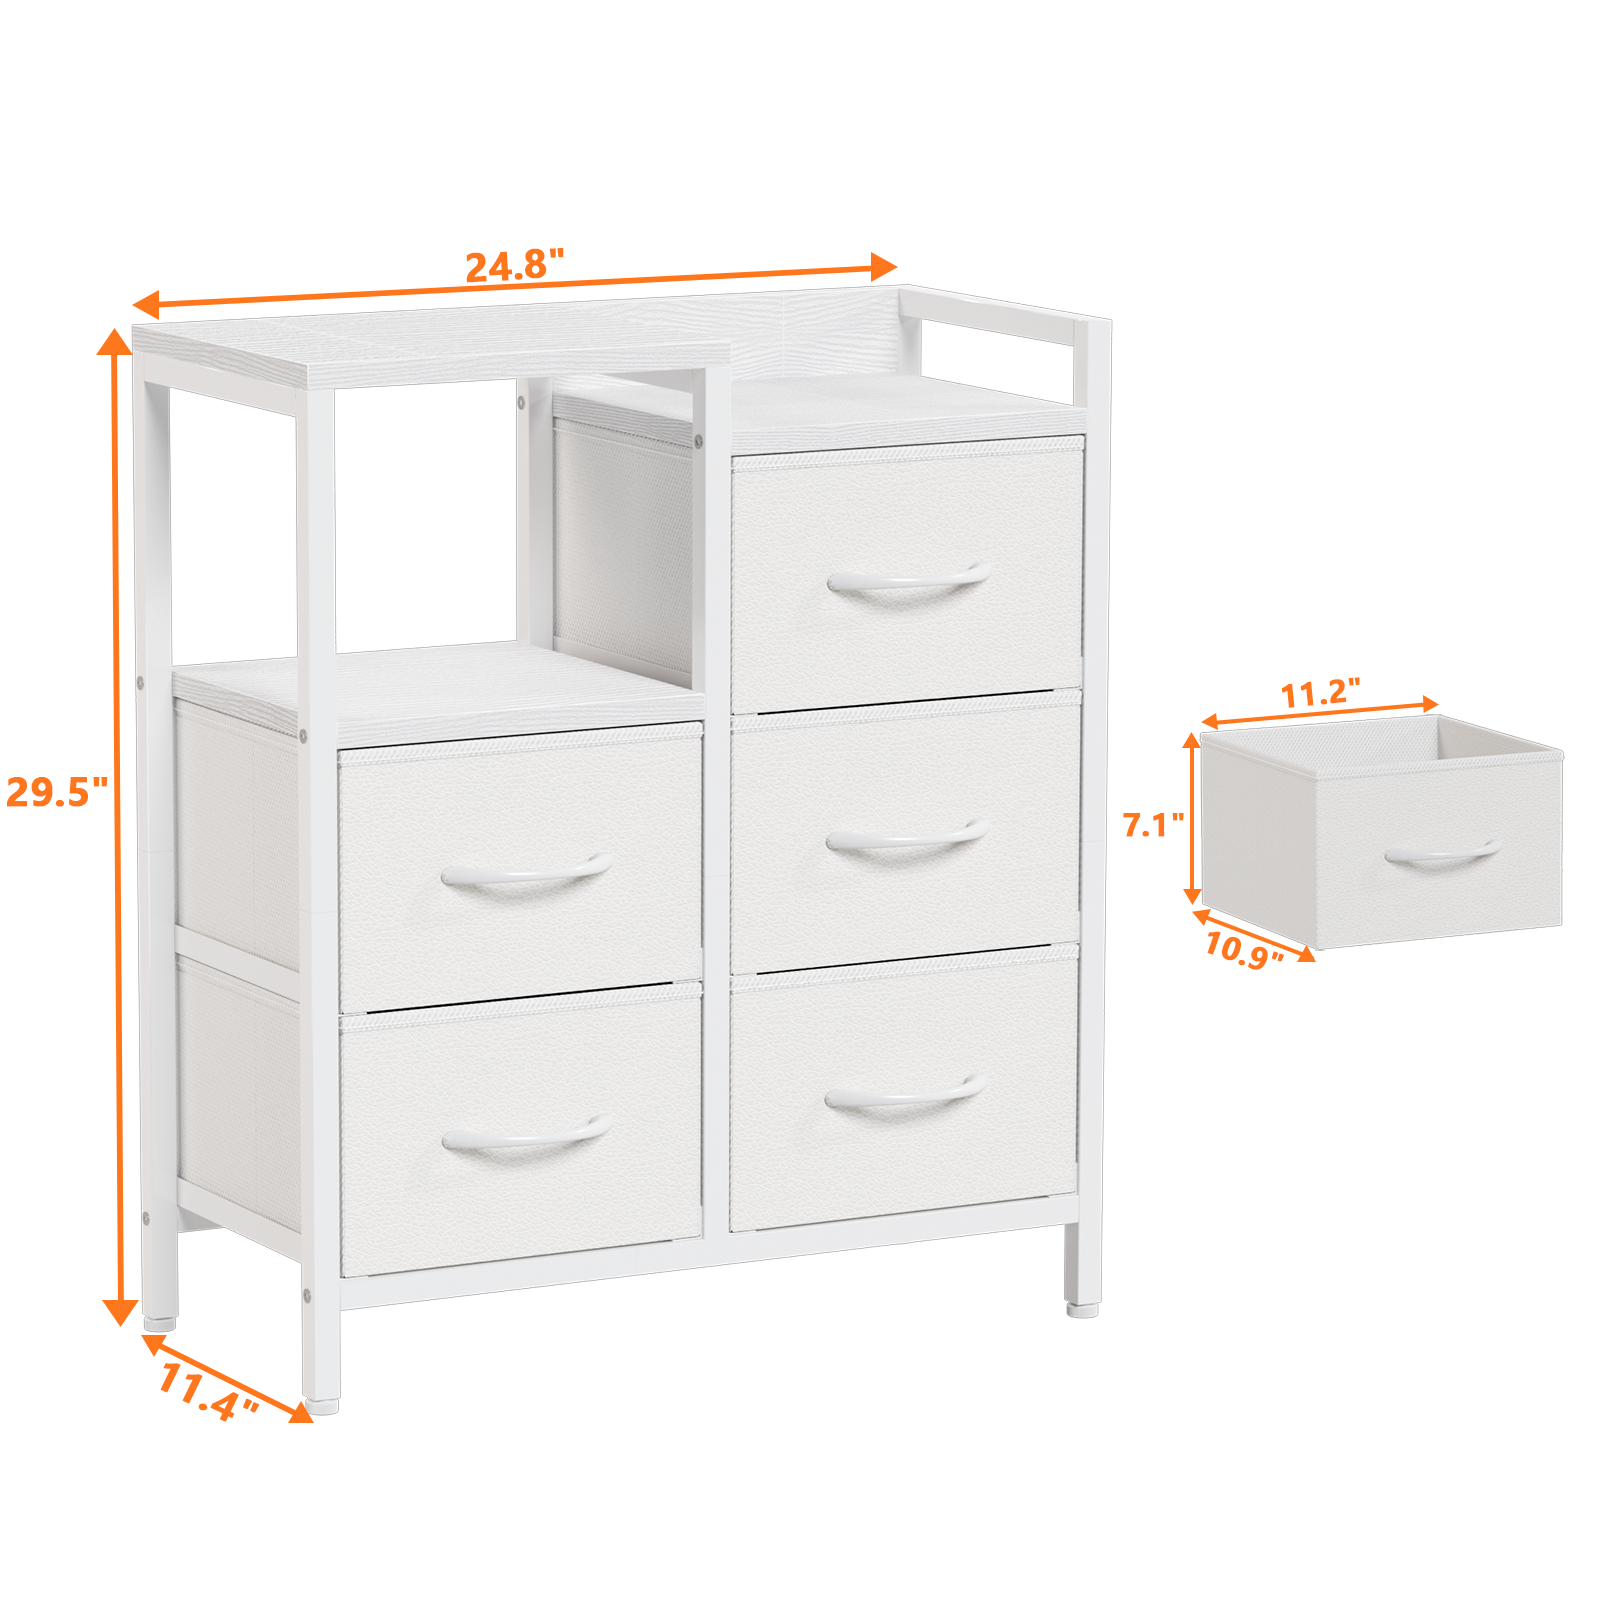 Furnulem Industrial Dresser for Bedroom